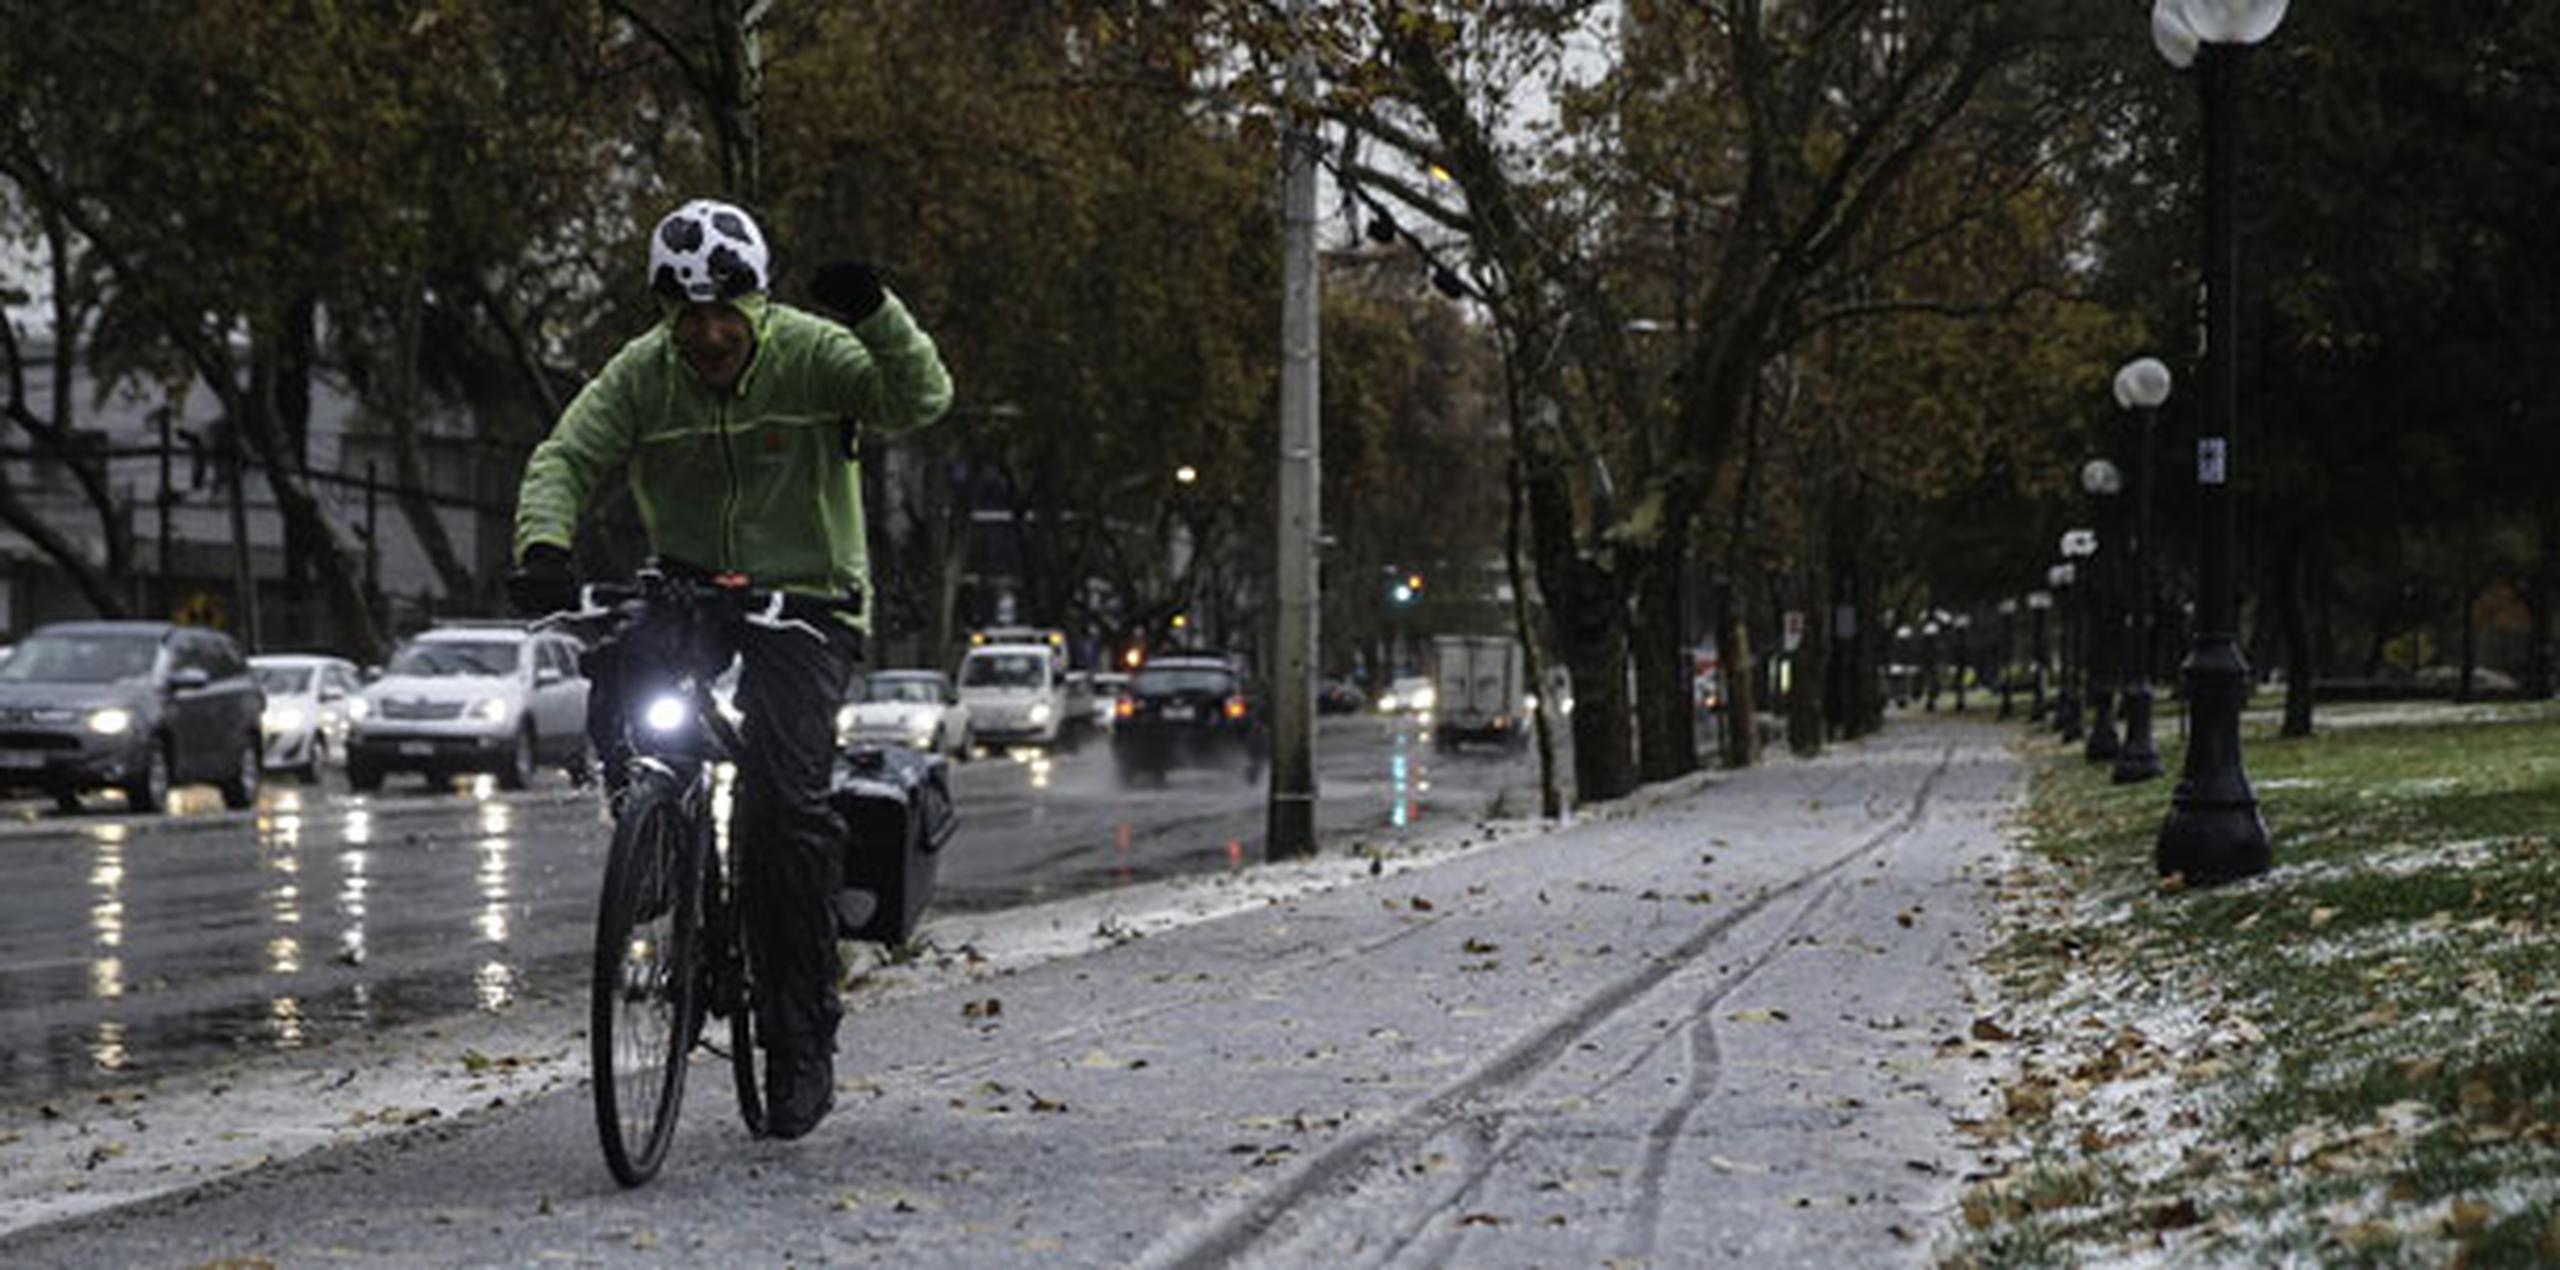 La nieve sorprendió a los viandantes en las calles de la capital chilena, quienes se apresuraron a tomar fotografías con sus teléfonos móviles de la estampa invernal. (EFE)